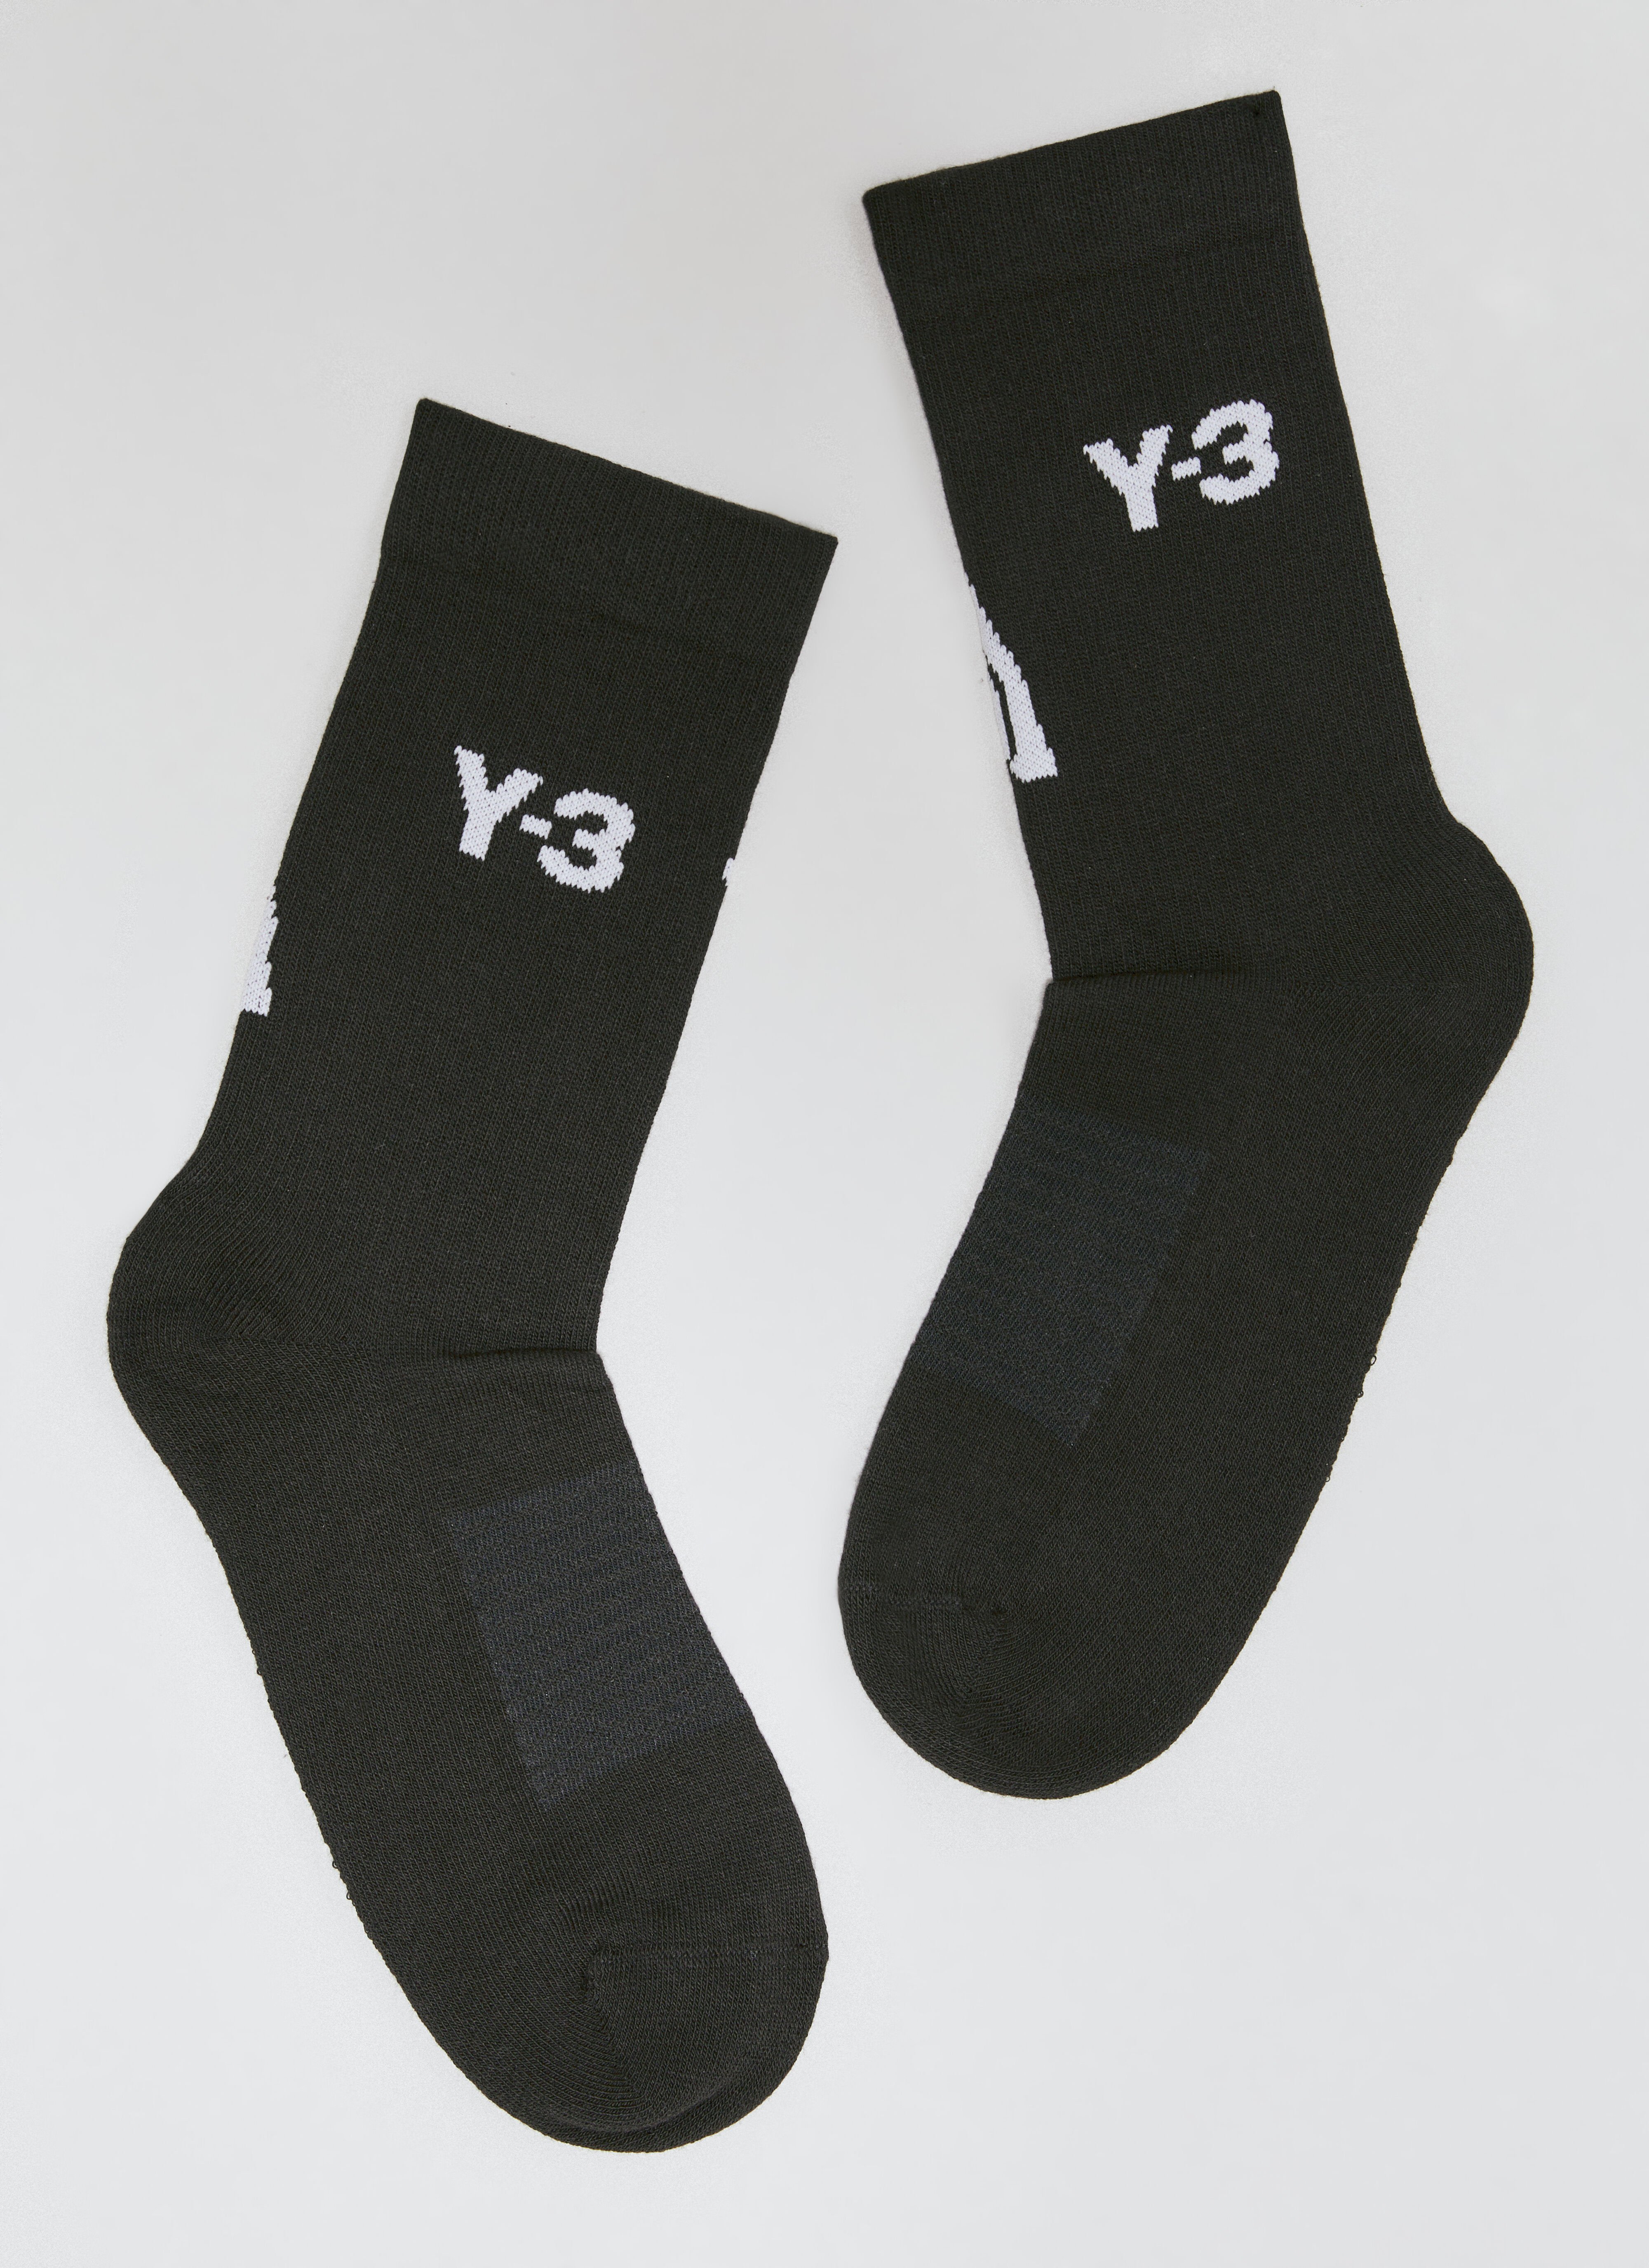 Y-3 로고 자카드 양말 블랙 yyy0356004